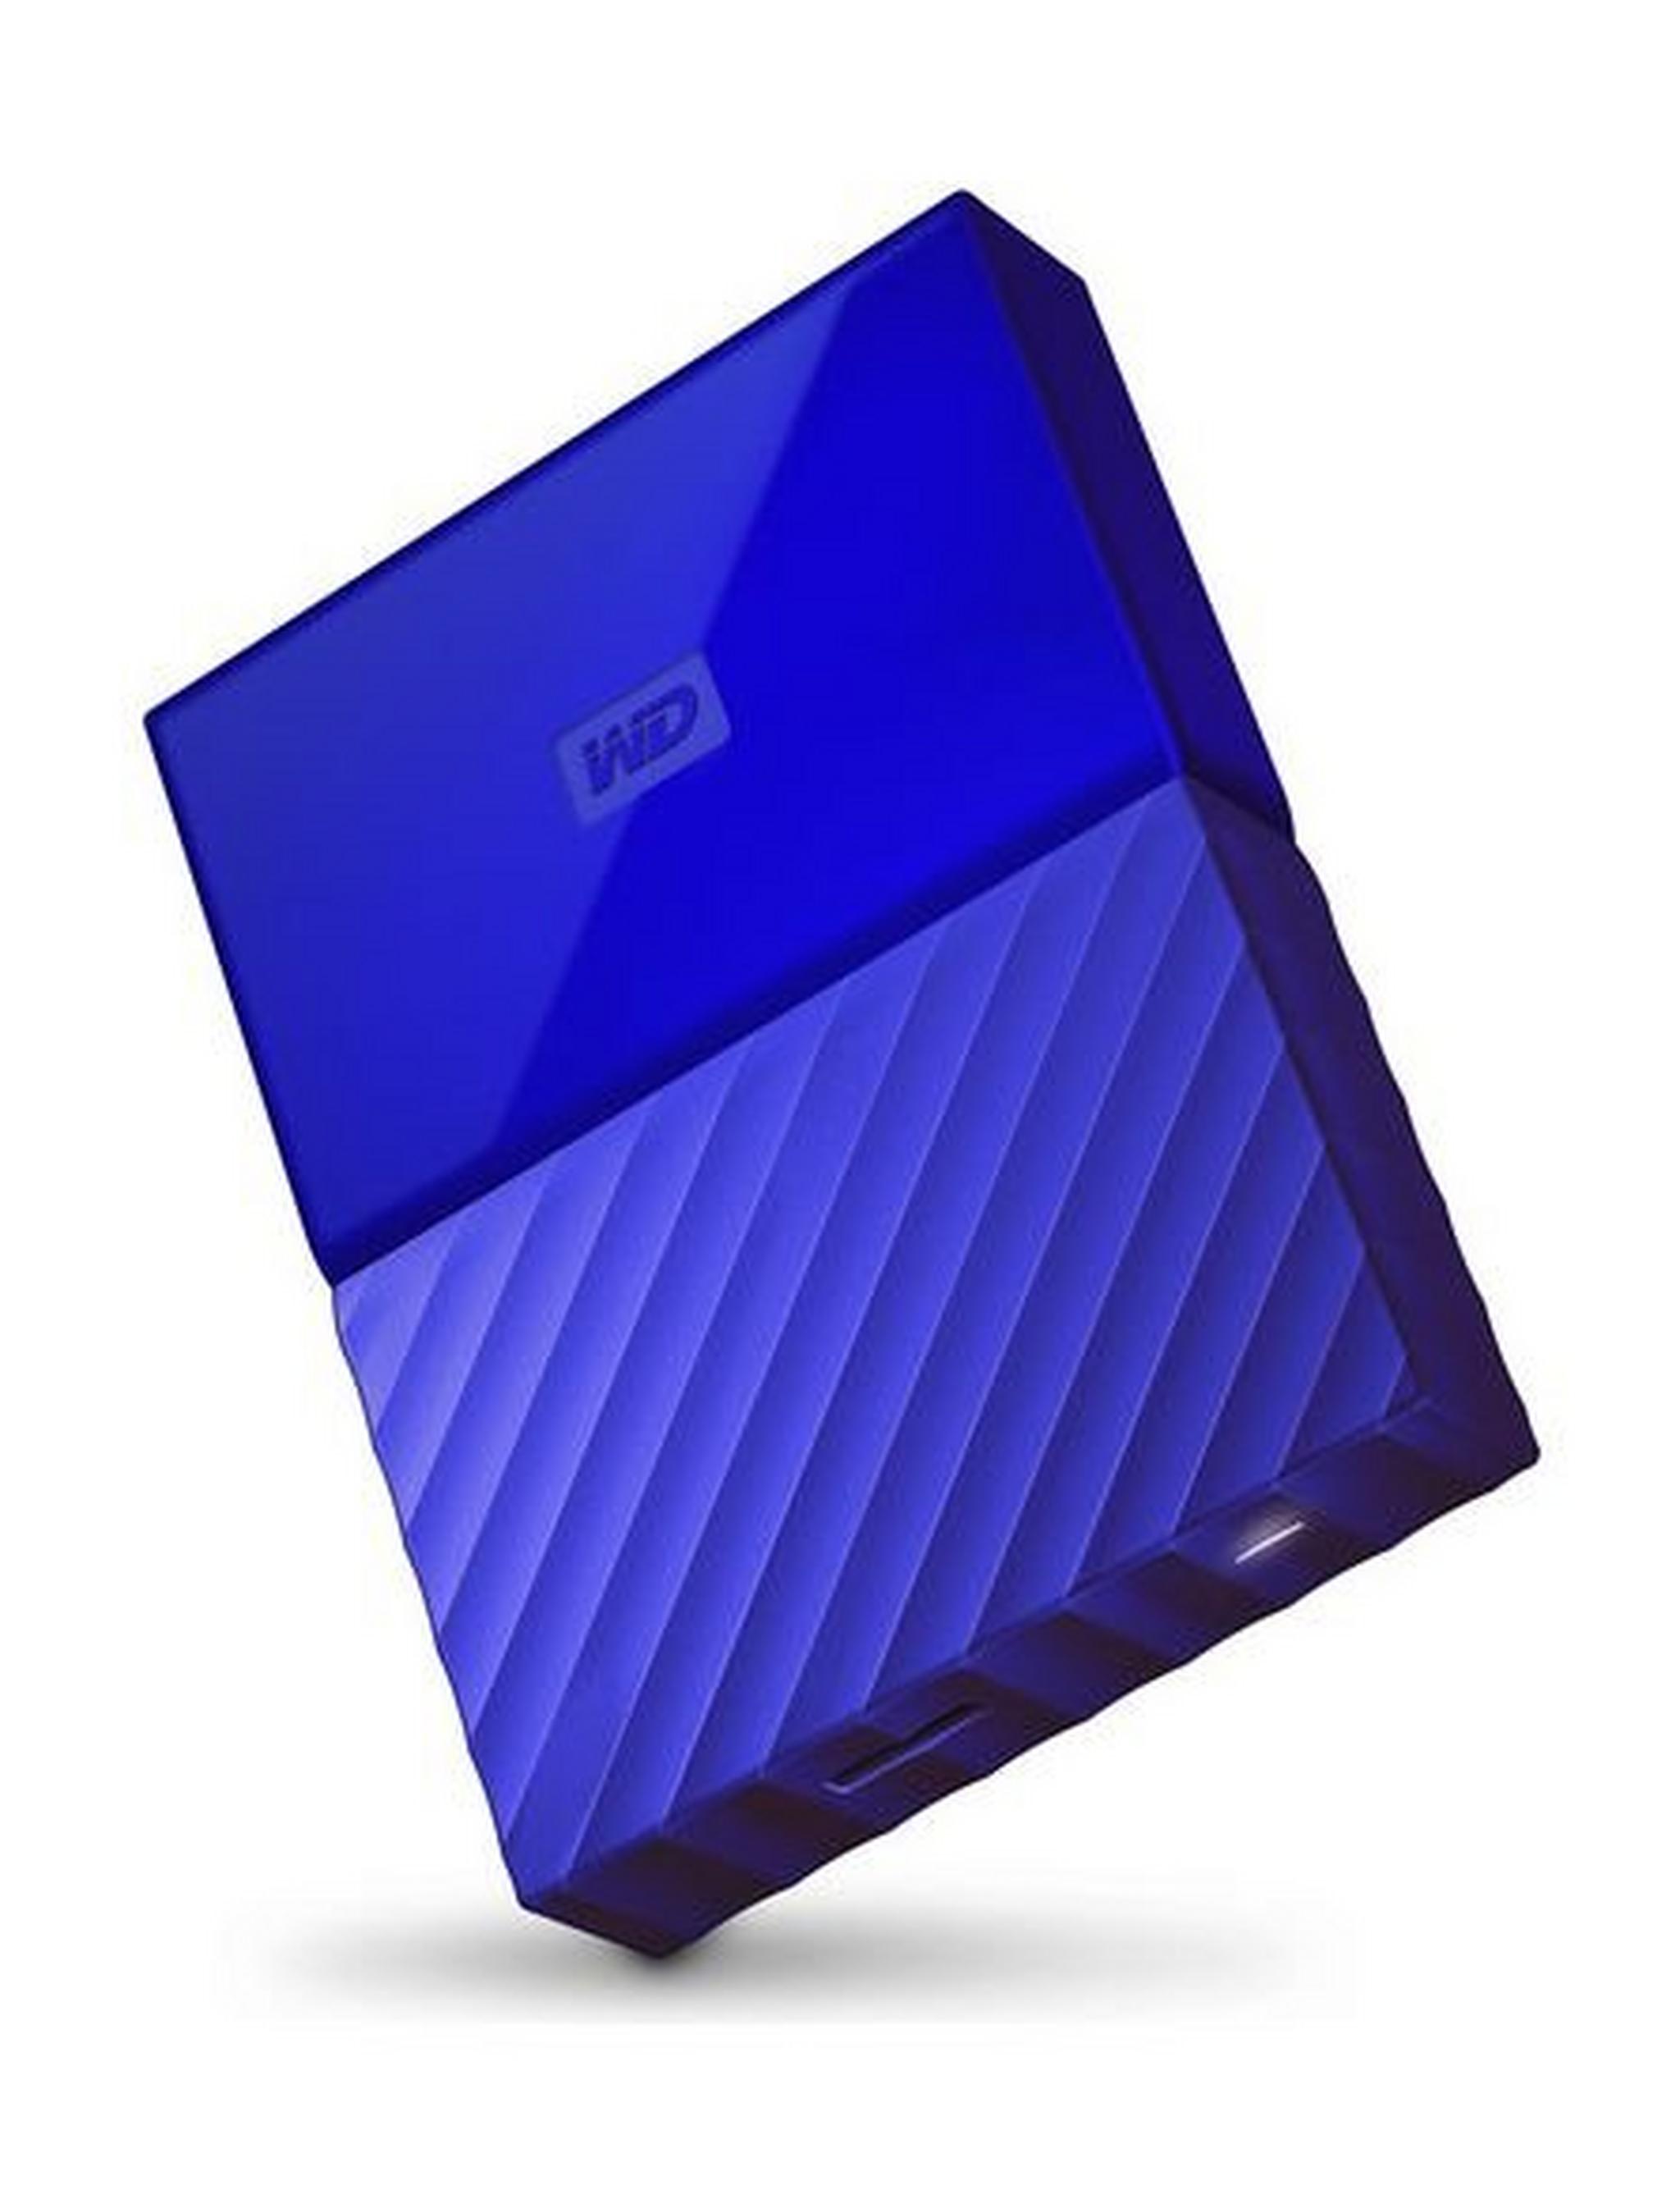 WD 4TB My Passport USB 3.0 External Hard Drive - Blue